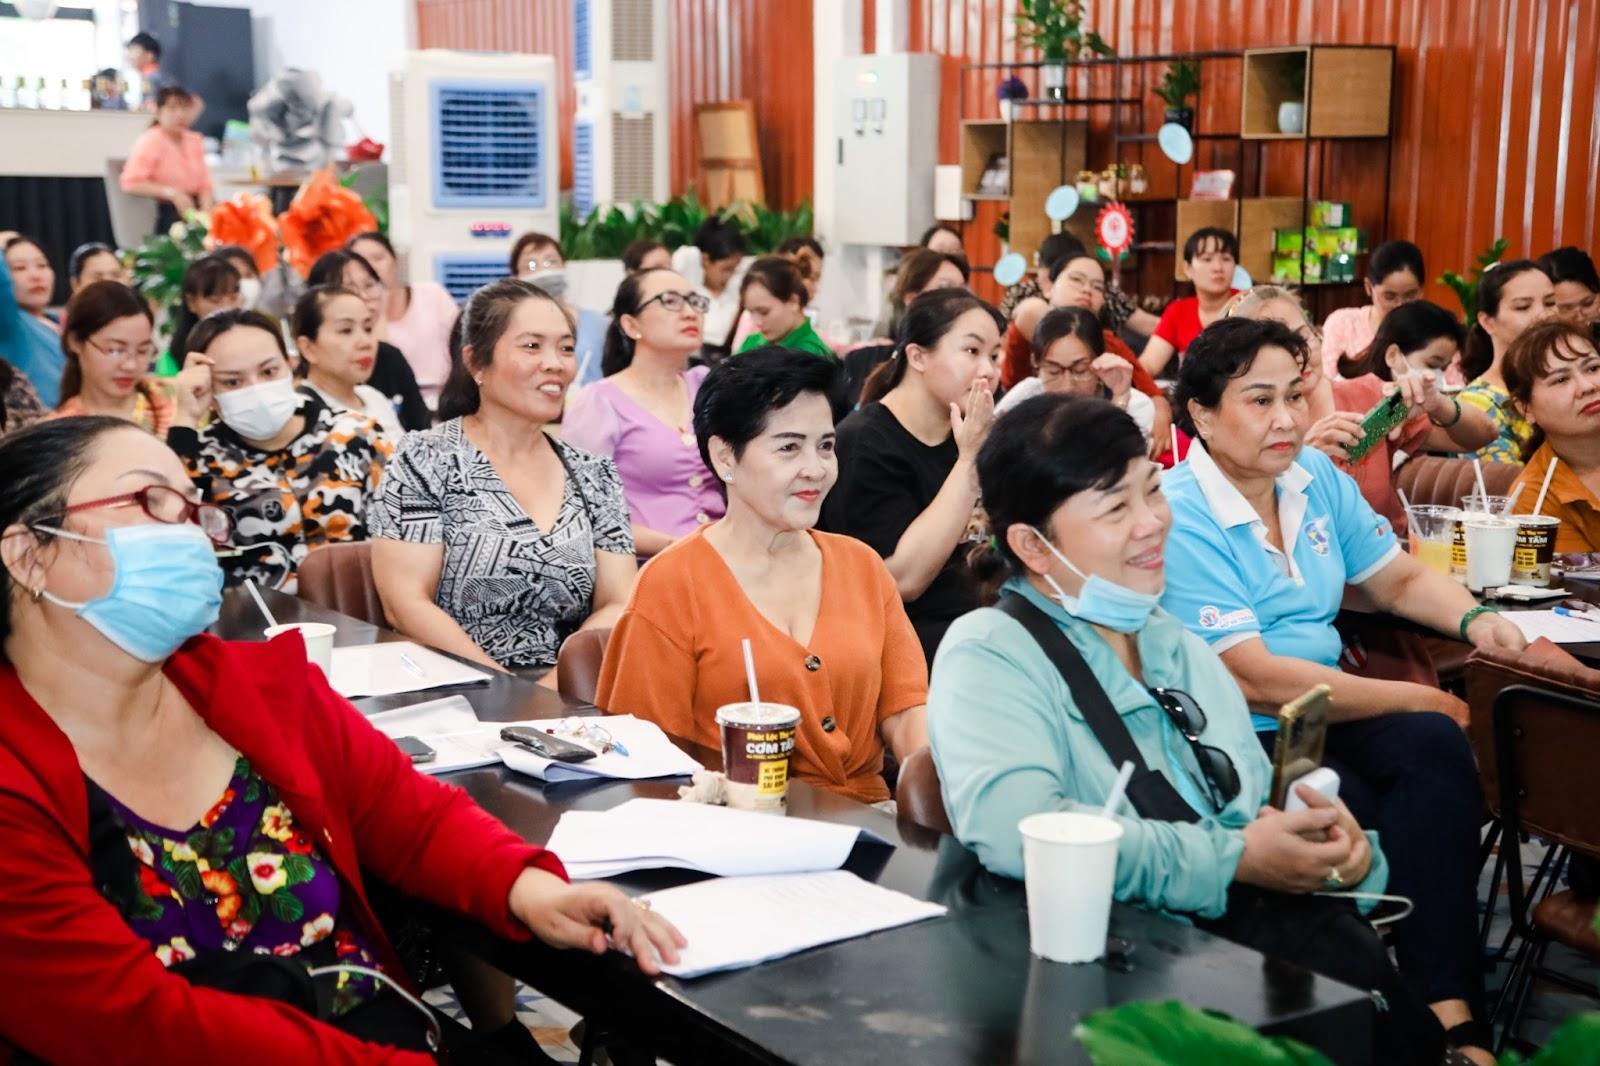 Xiaomi trao tặng 100 smartphone đến chị em phụ nữ dự định lập nghiệp trong lĩnh vực ăn uống trên nền tảng số